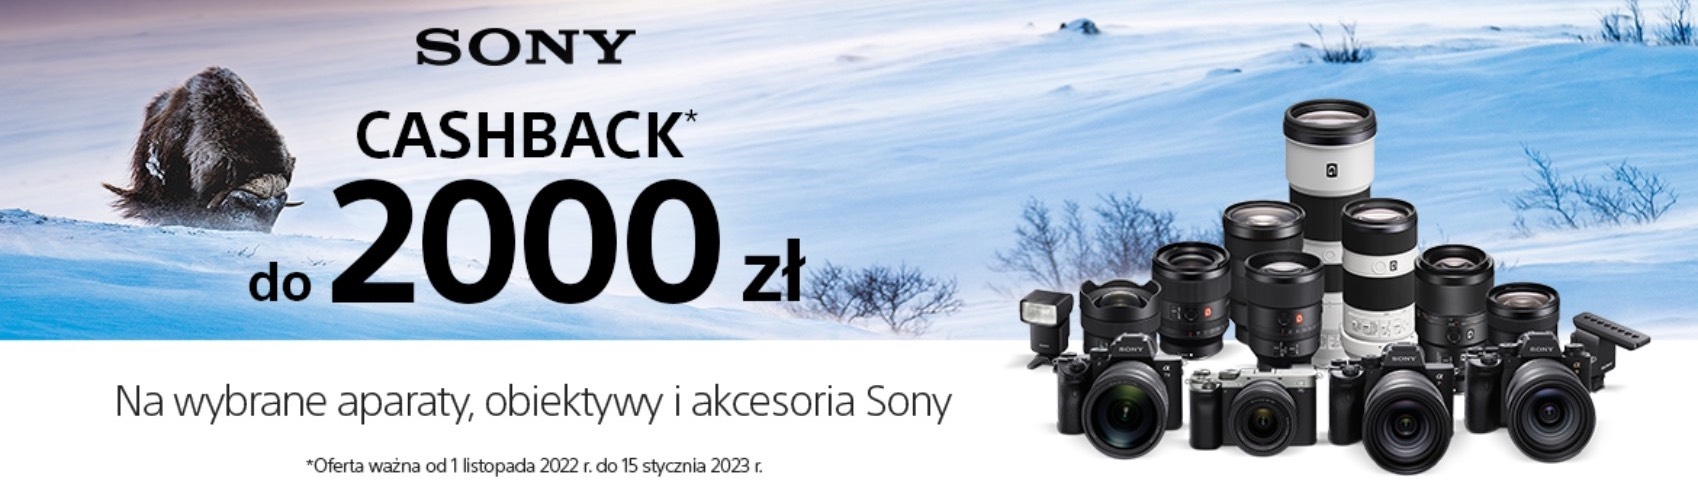 Skorzystaj z Cashbacku Sony do 2000 zł na wybrane aparaty, obiektywy i akcesoria Sony